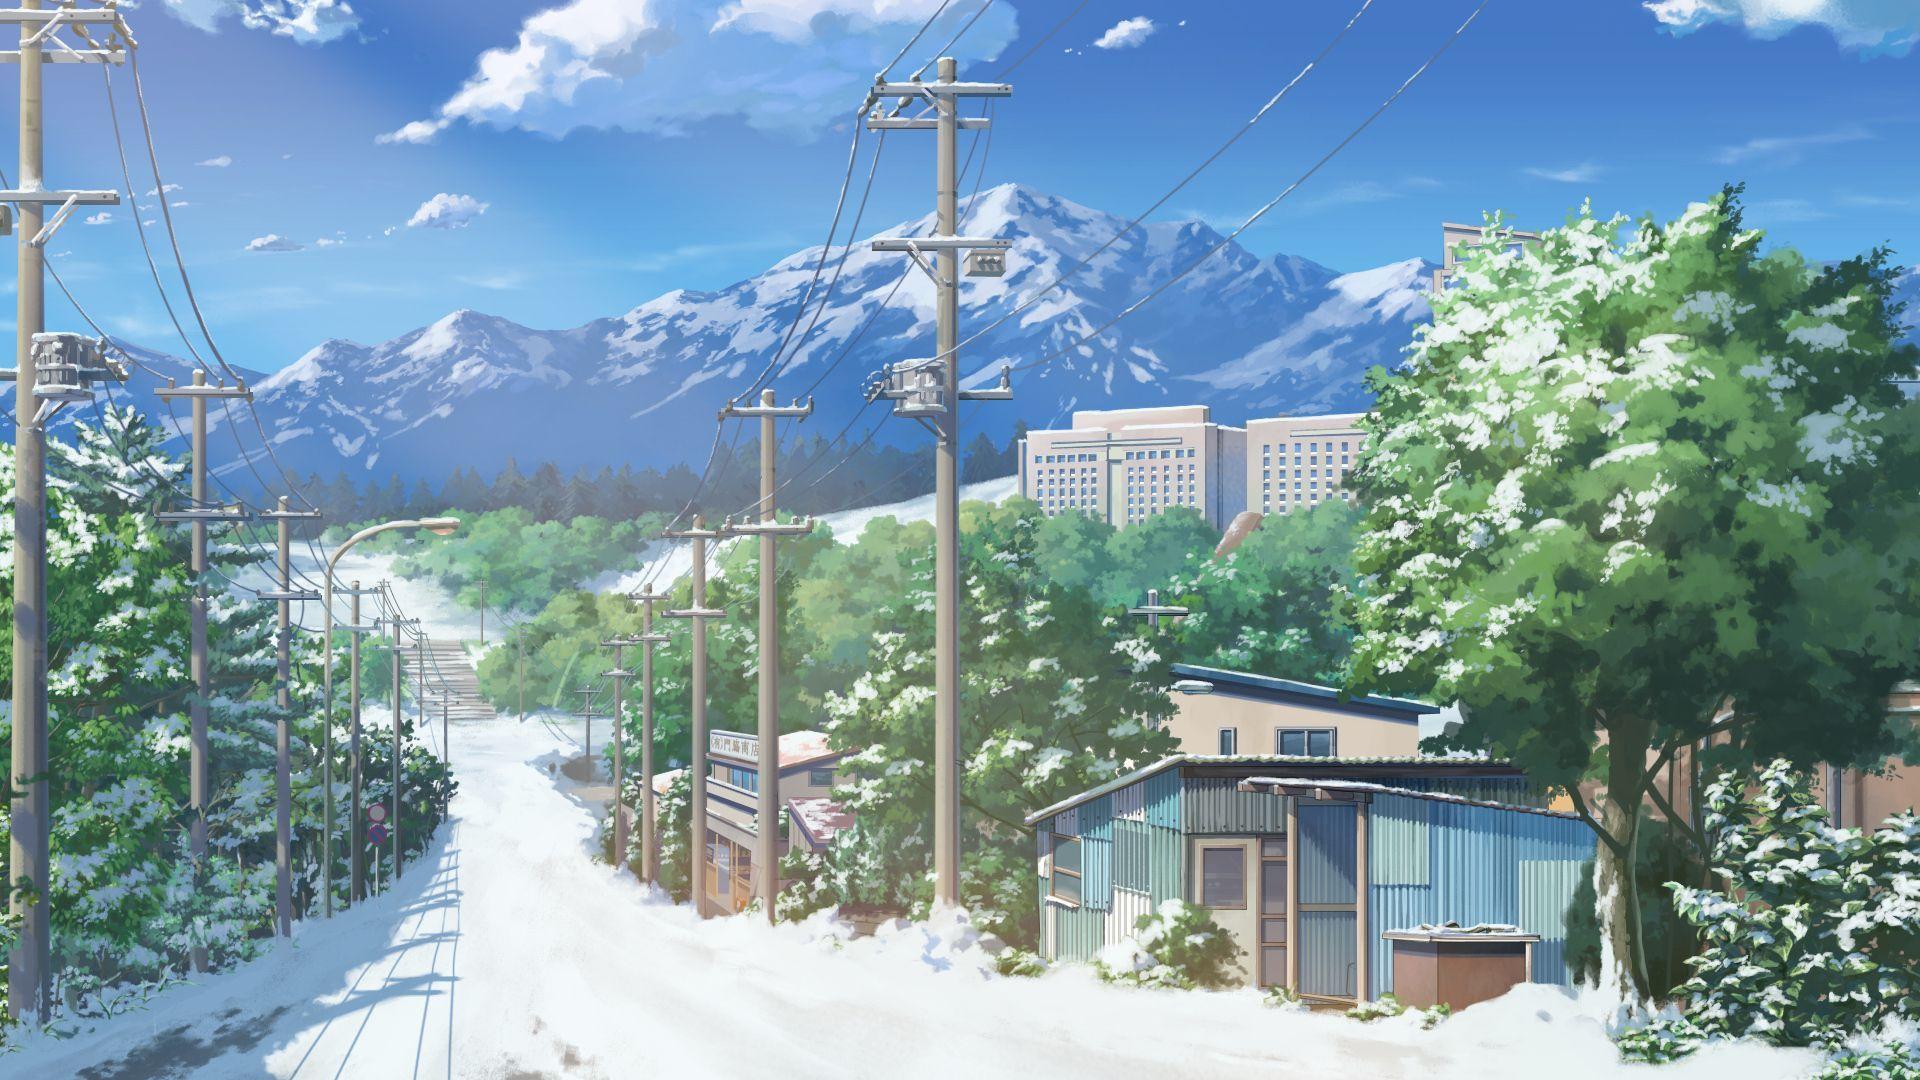 Wallpaper. Anime scenery wallpaper, Scenery wallpaper, Cityscape wallpaper